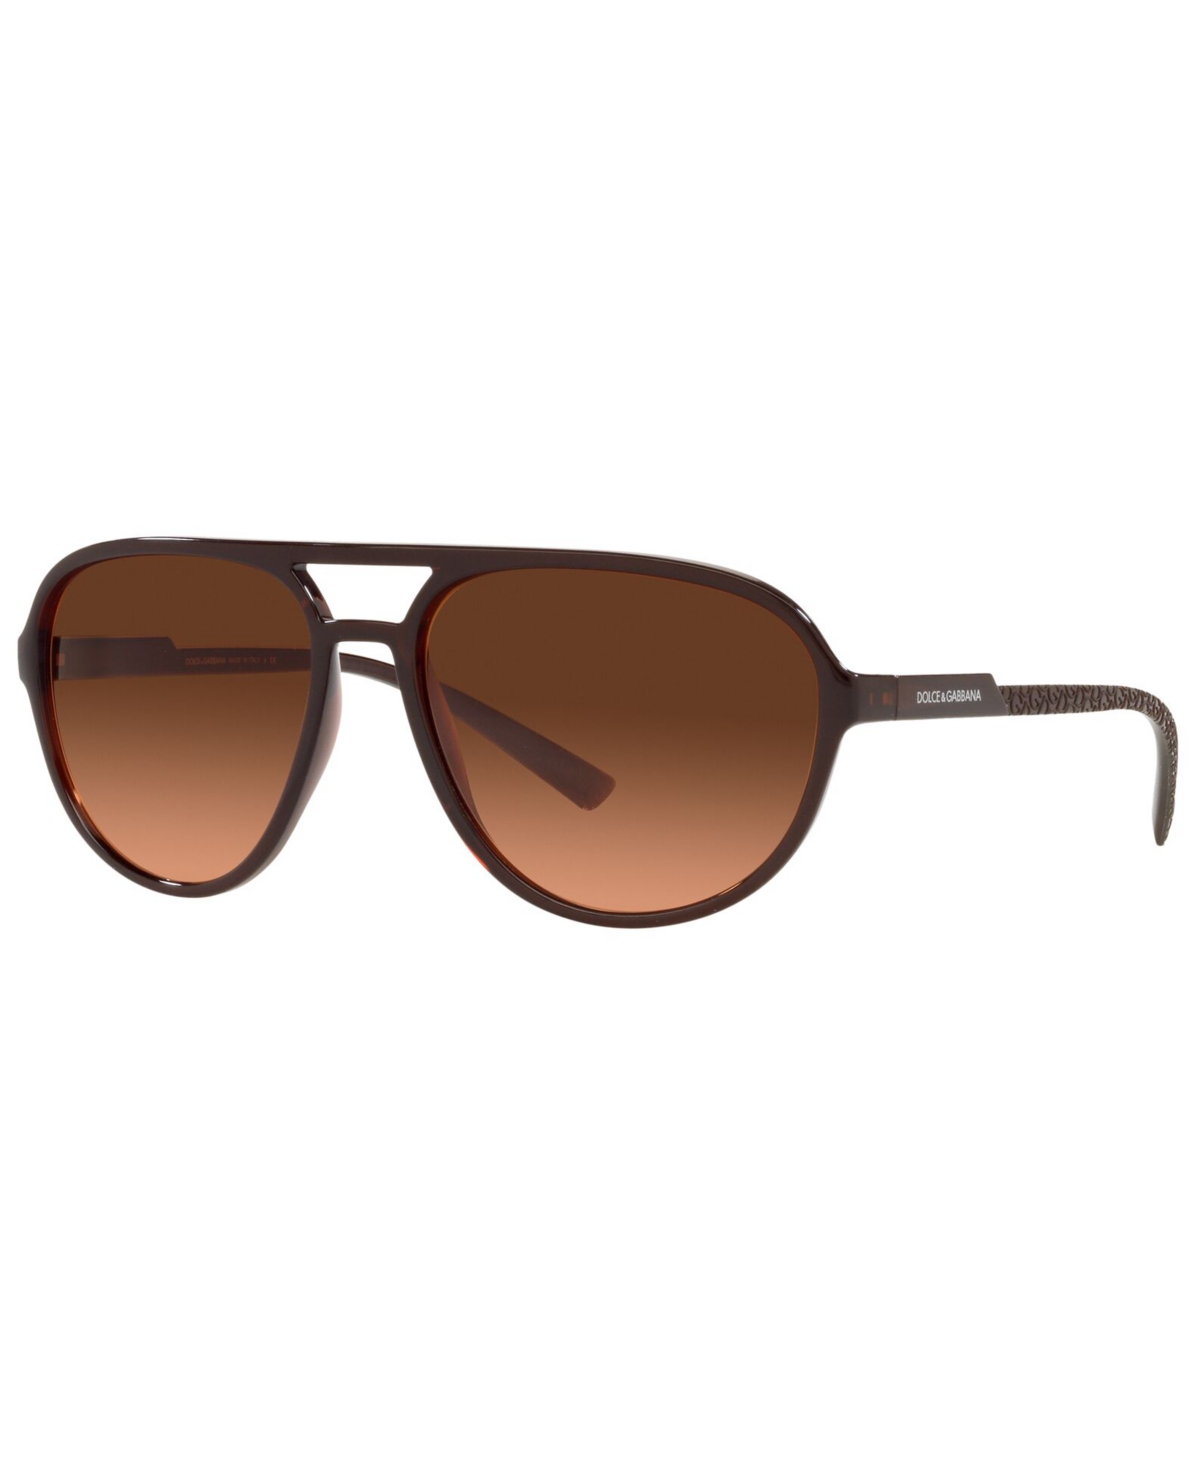 Dolce & Gabbana Men's Sunglasses, Dg6150 60 In Transparent Tobacco,orange Gradient Brow